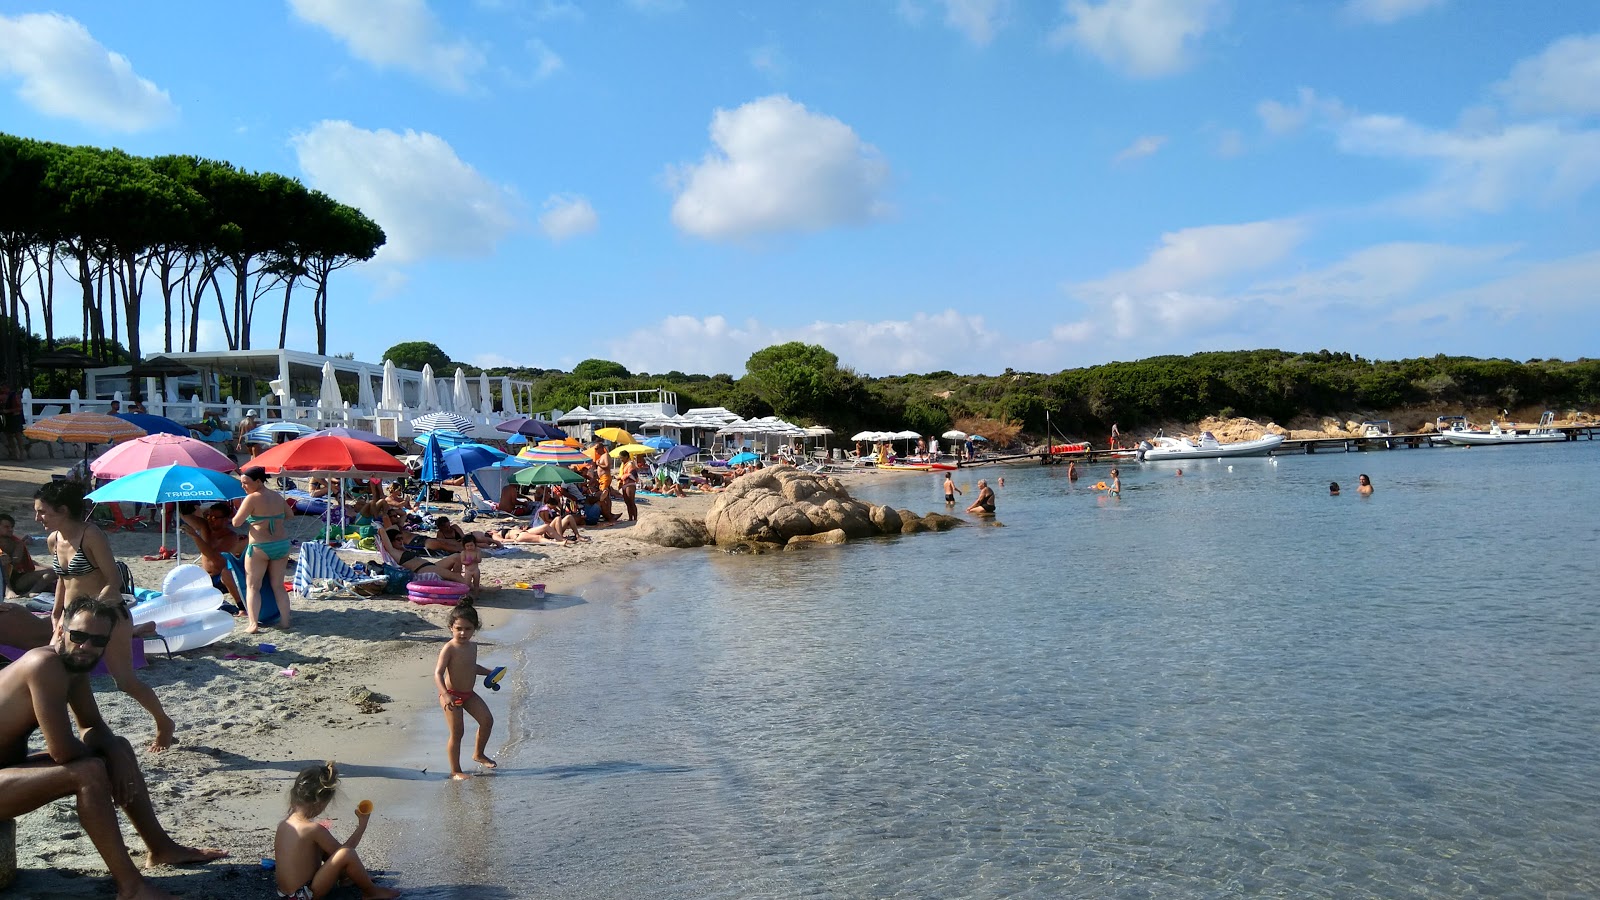 Fotografija Spiaggia Conca Verde in naselje